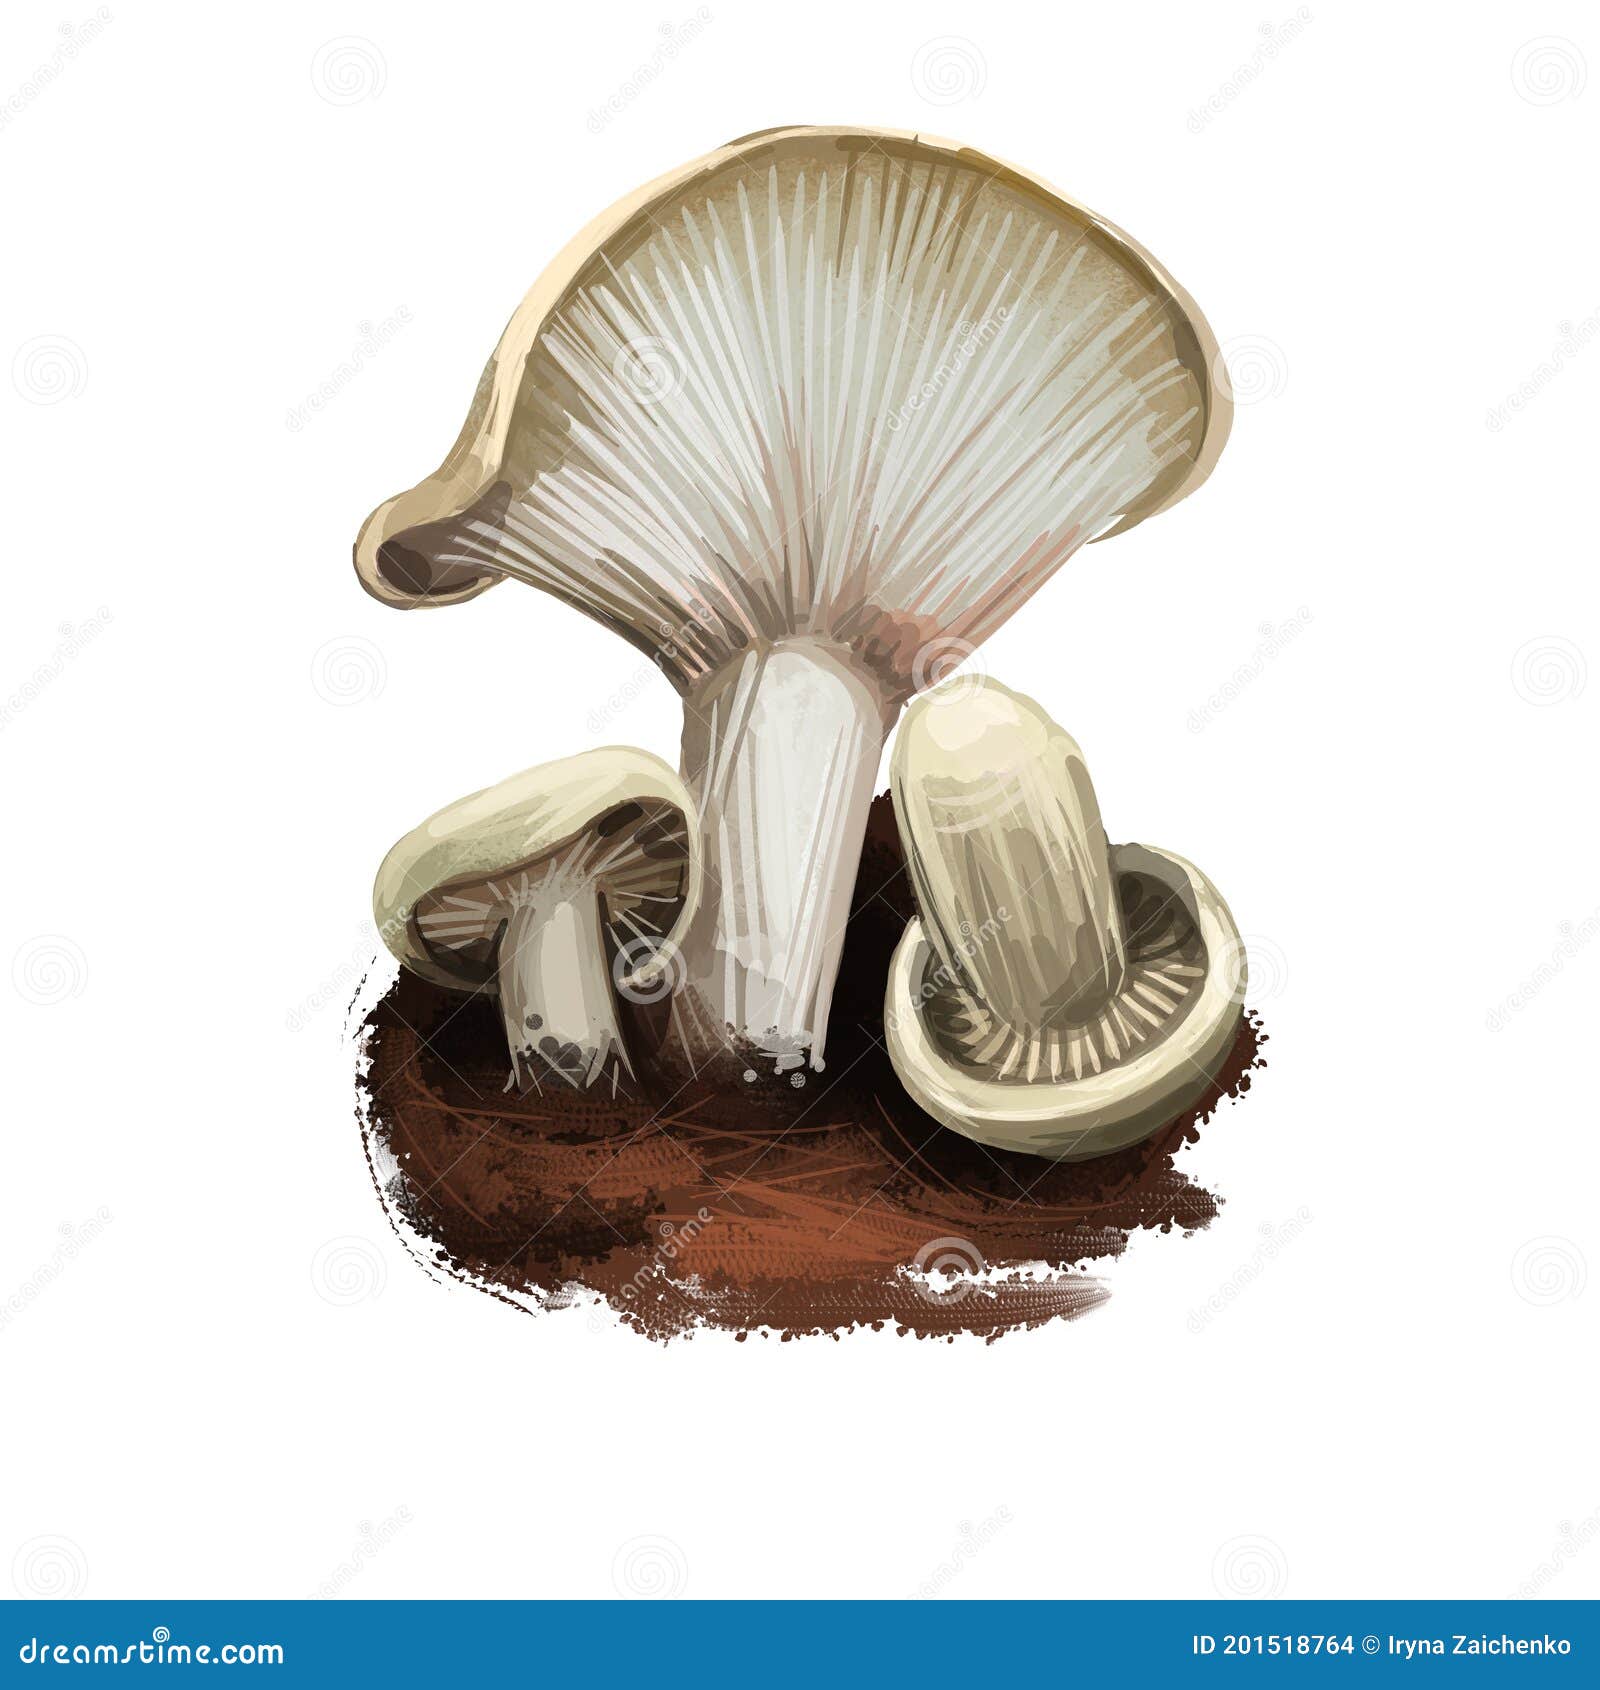 Lactarius Pallidus Or Pale Milkcap Mushroom Closeup Digital Art ...